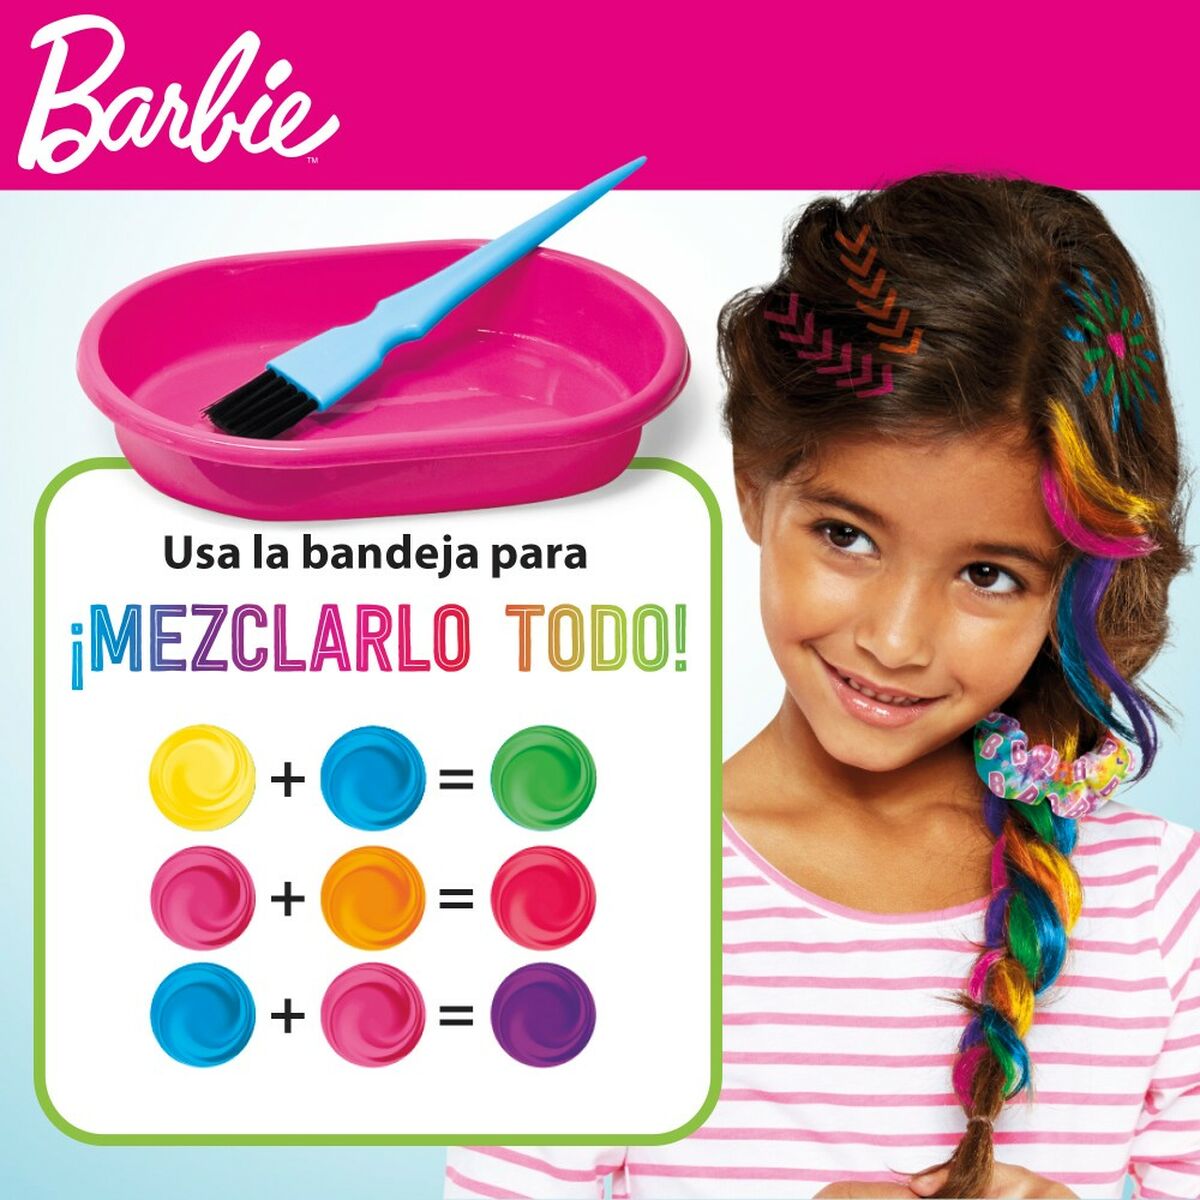 Hair Dressing Set Barbie Rainbow Tie 15,5 x 10,5 x 2,5 cm Hair with highlights Multicolour